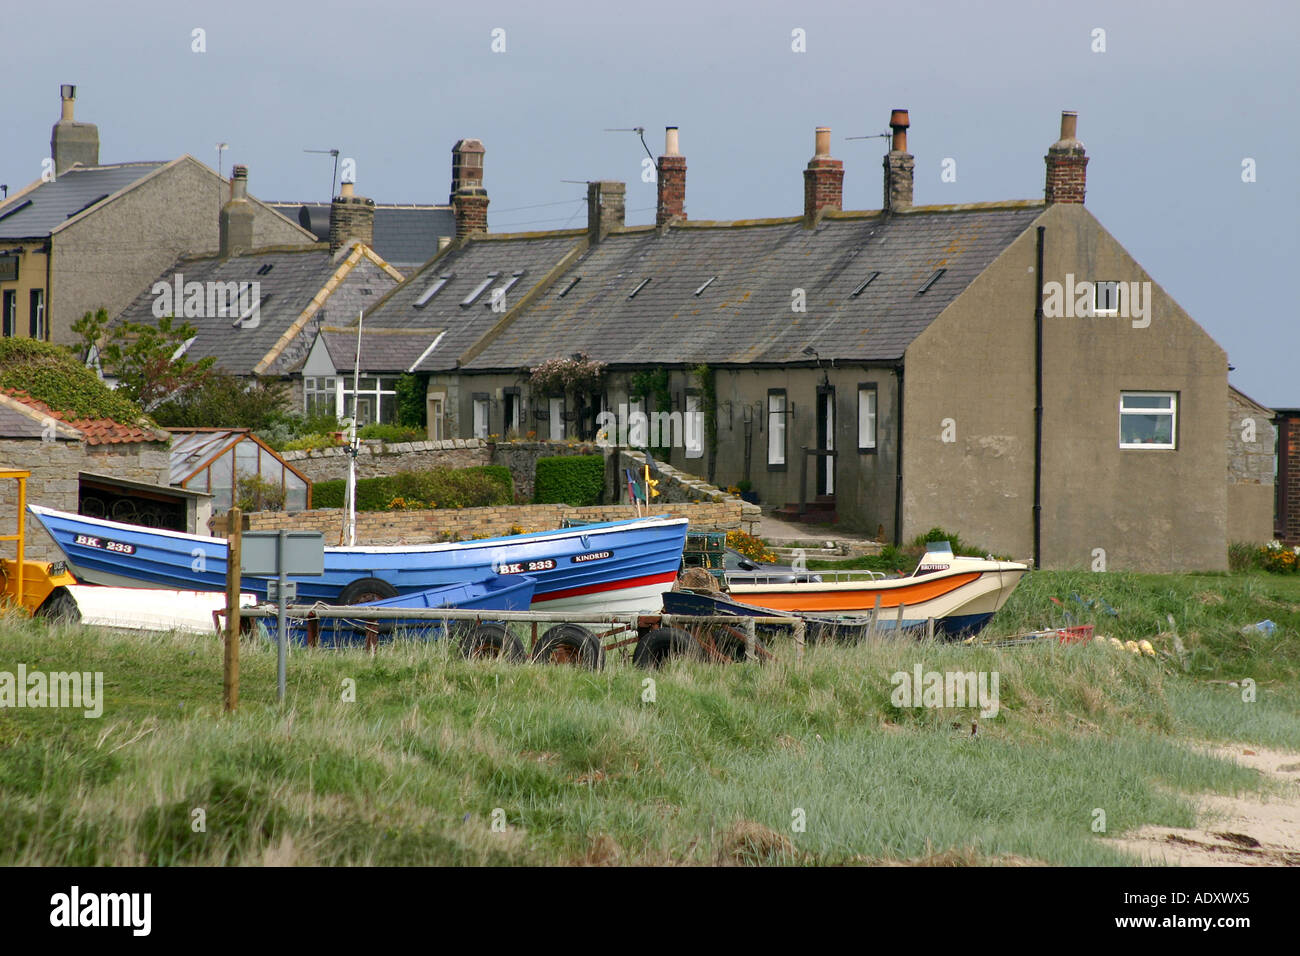 Groupe de chalets sur la côte de Northumberland avec bateaux de pêche sur la terre près d'eux. Banque D'Images